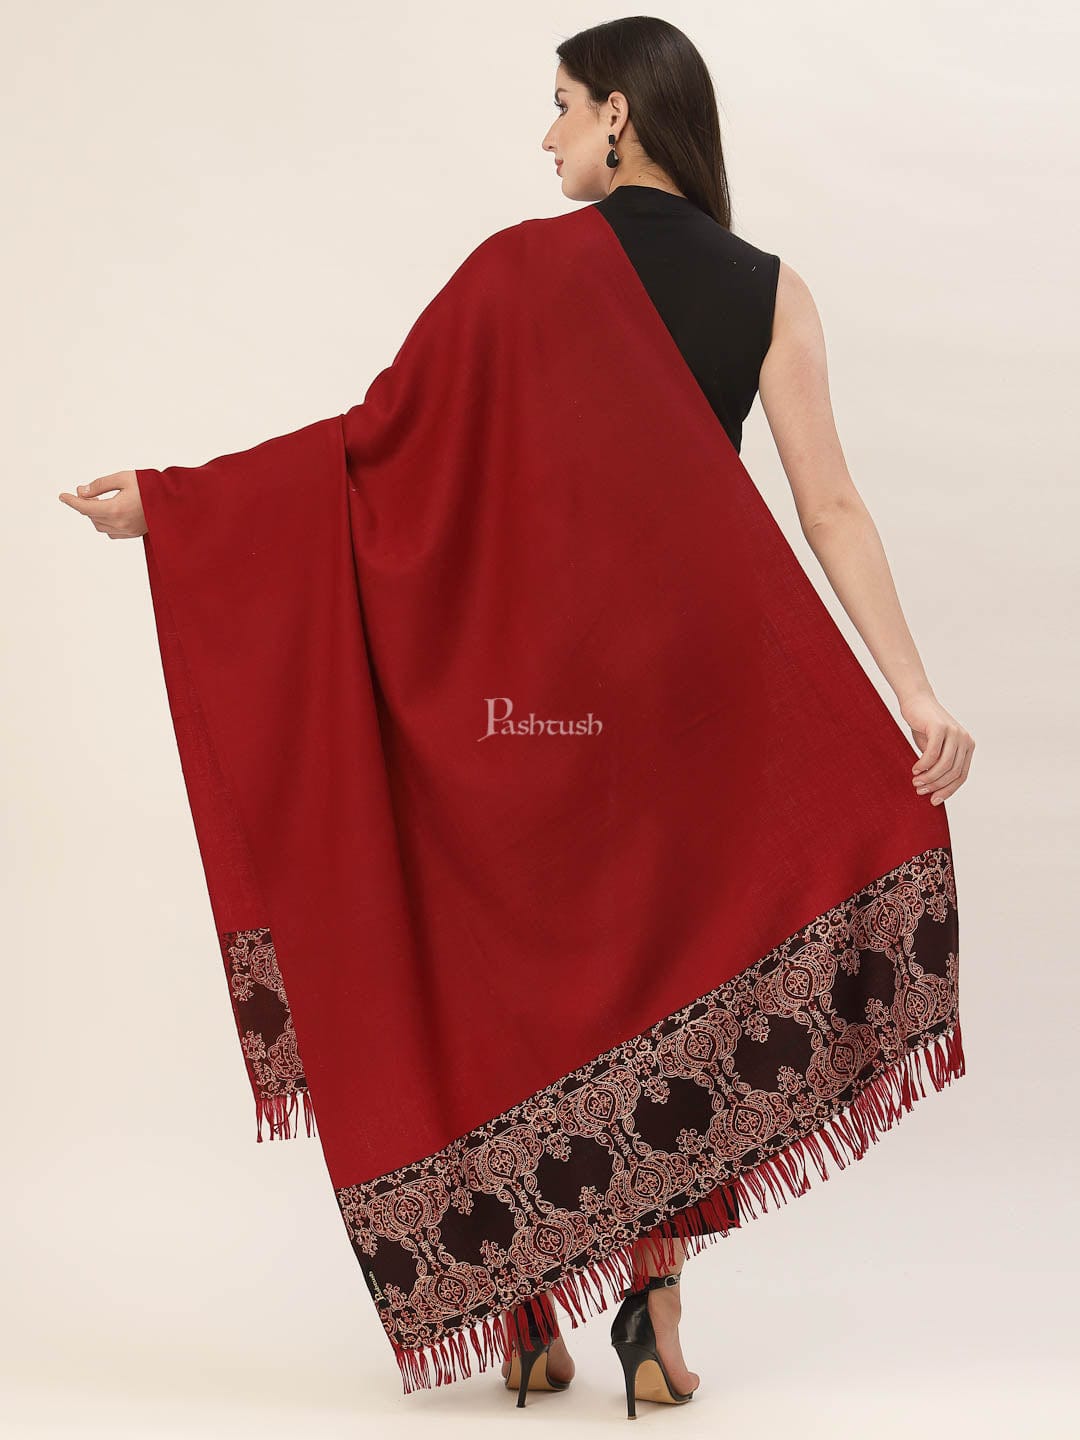 Pashtush India Womens Shawls Pashtush Womens 100% Hand Embroidery Shawl Woollen Kingri